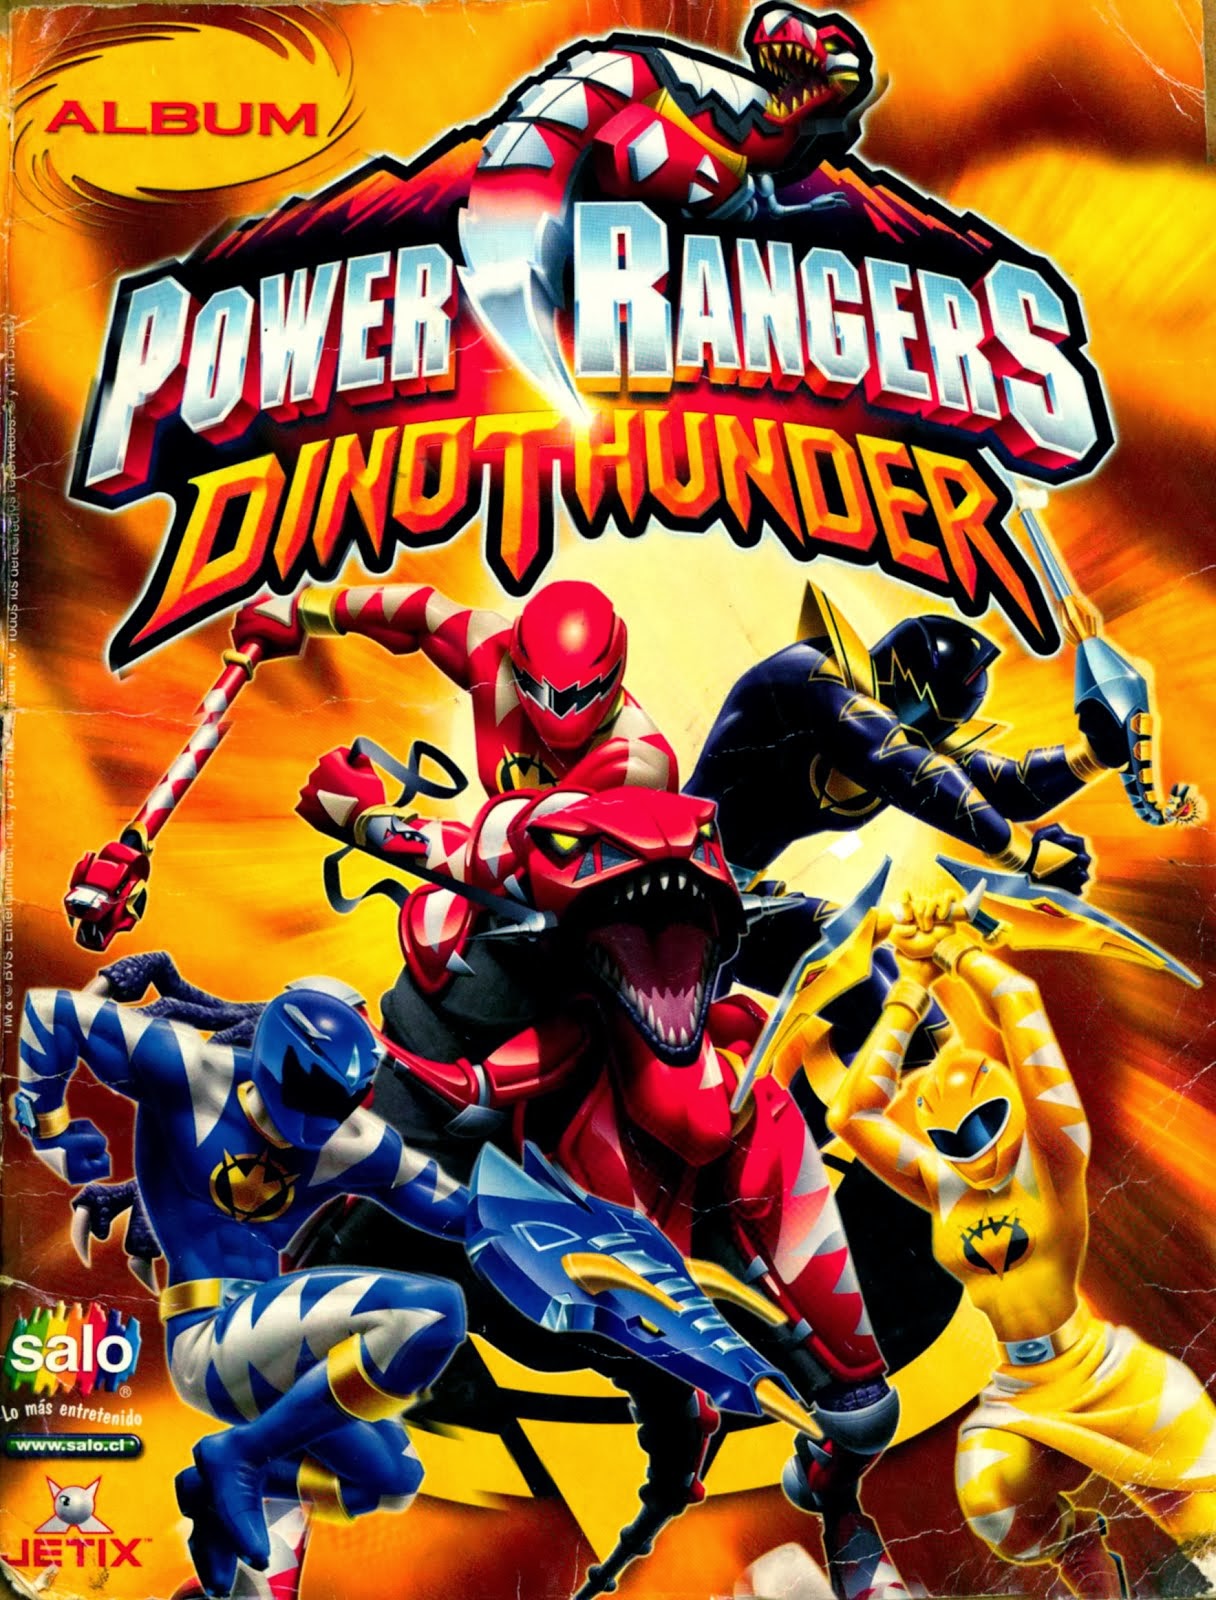 Power rangers Dino Thunder